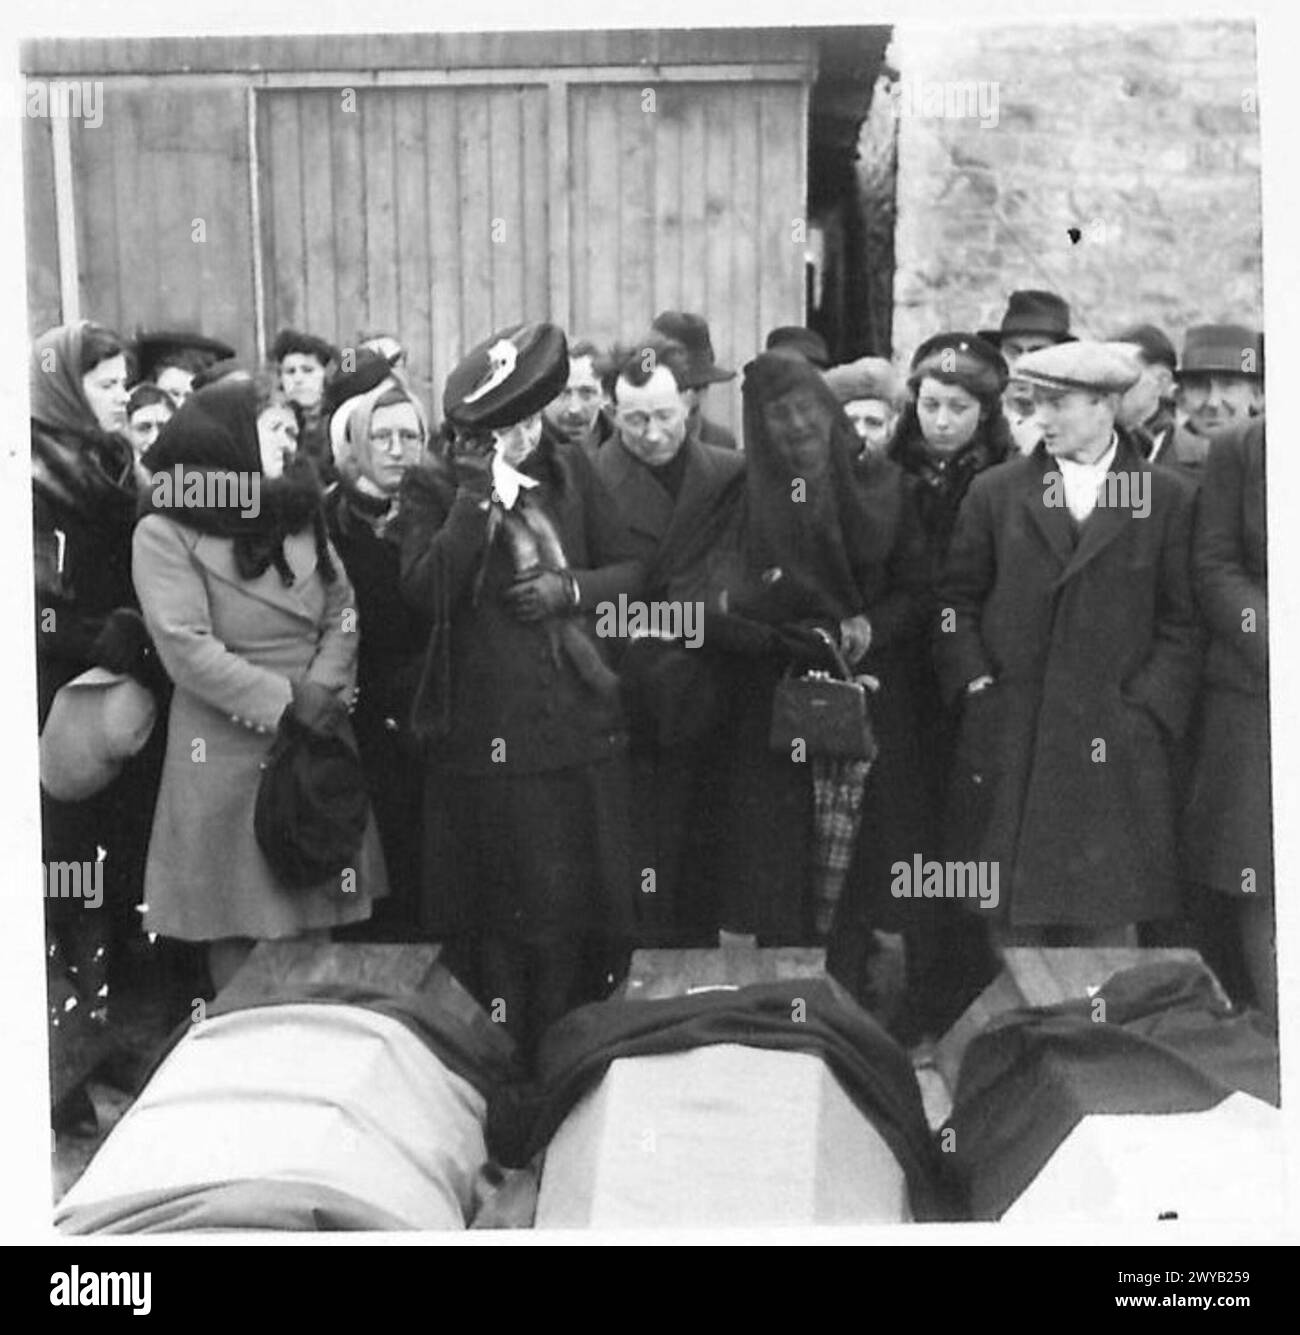 FUNERALE DELLE VITTIME della "BANDA" - didascalia originale in tempo di guerra: Le donne in lutto delle vittime, stanno pateticamente accanto alle bare dei loro cari. Negativo fotografico, British Army, 21st Army Group Foto Stock